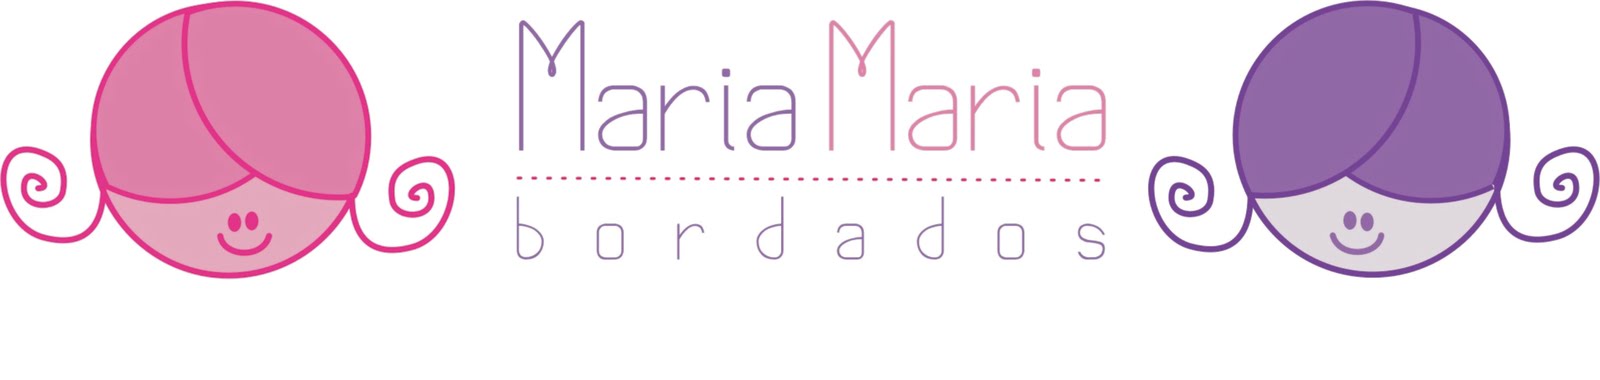 Maria Maria Bordados